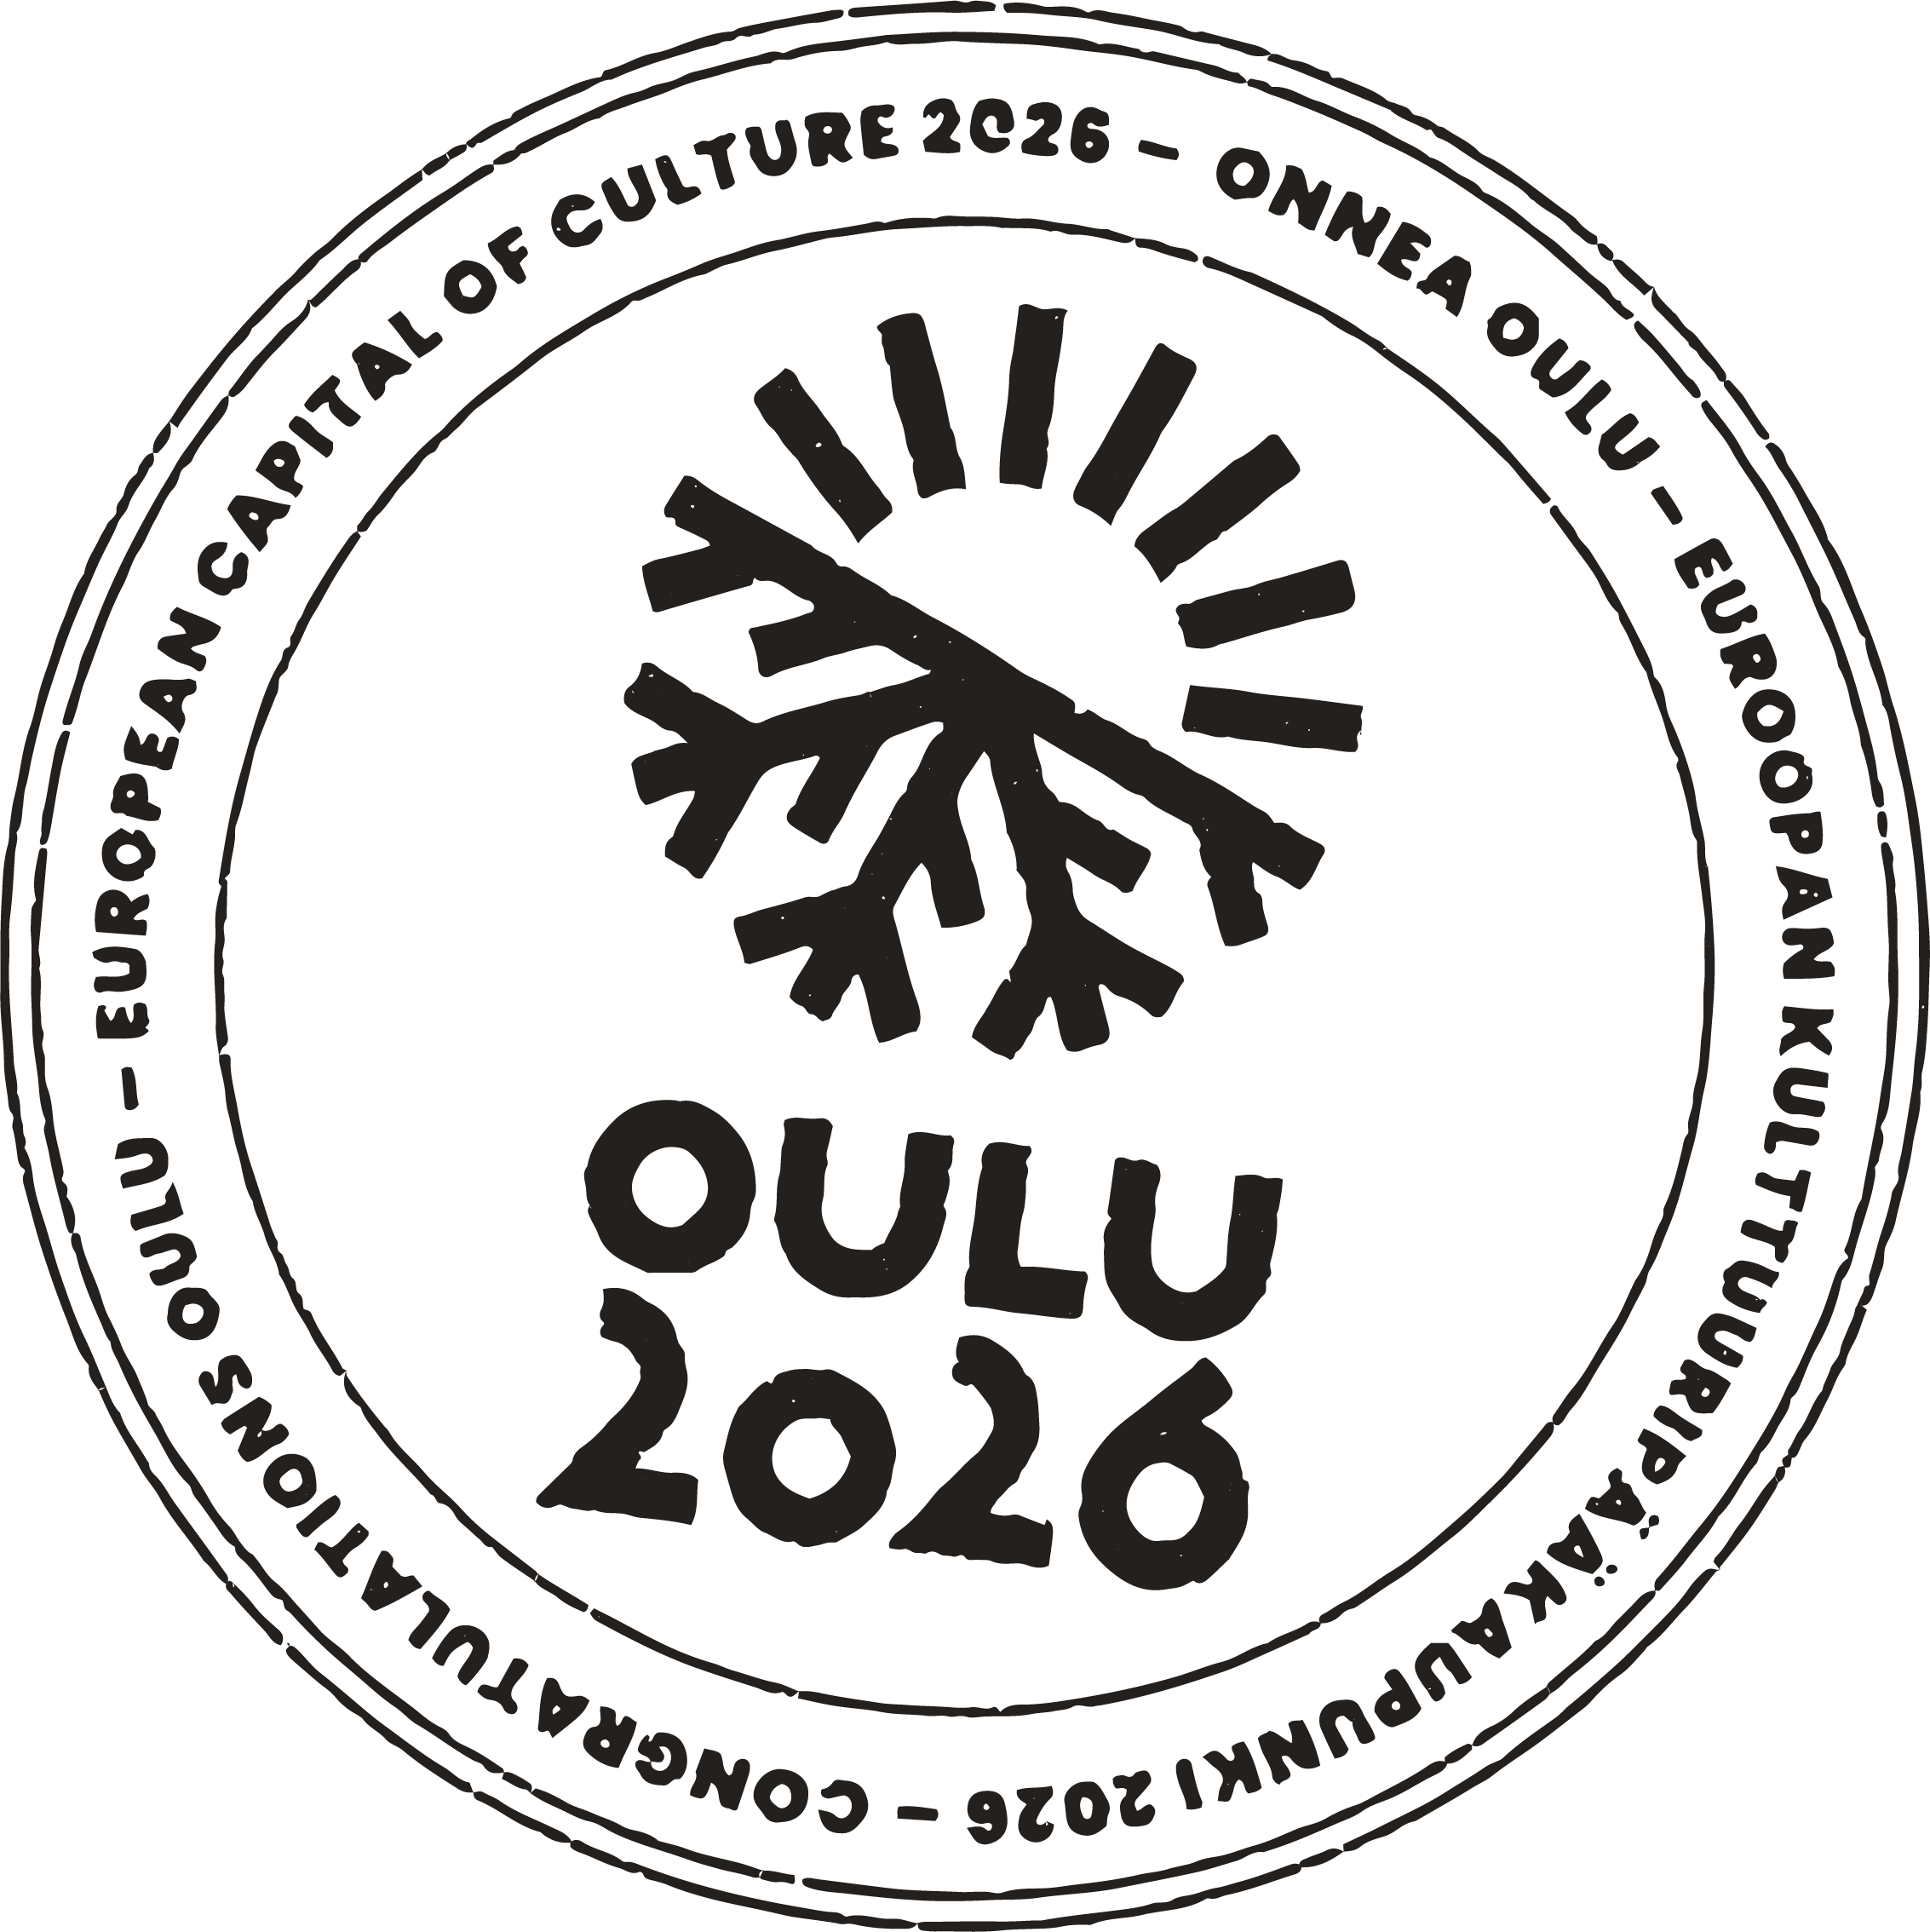 Oulu 2026 logo.